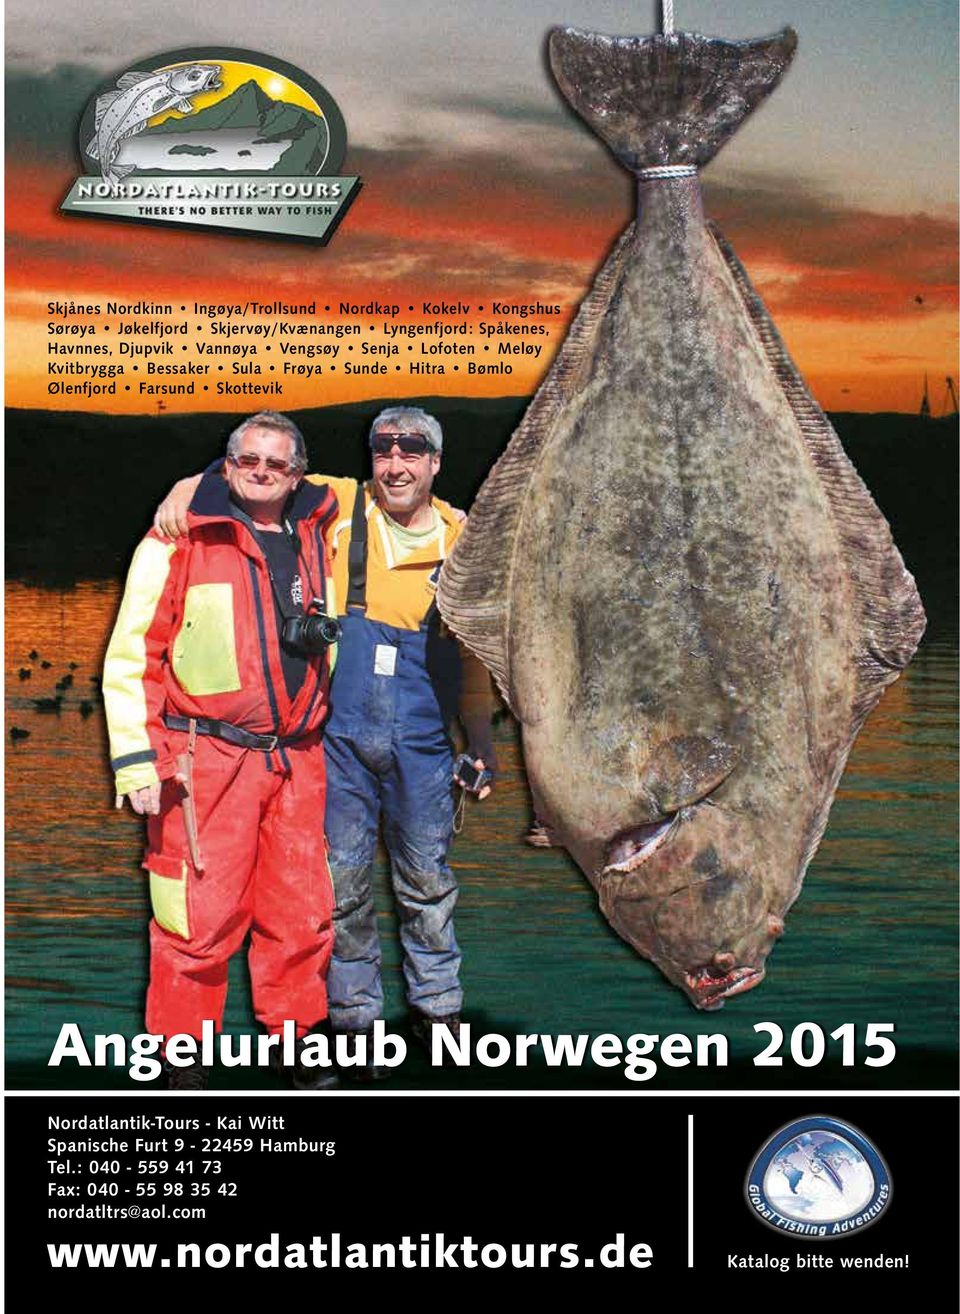 Bømlo Ølenfjord Farsund Skottevik Angelurlaub Norwegen 2015 Nordatlantik-Tours - Kai Witt Spanische Furt